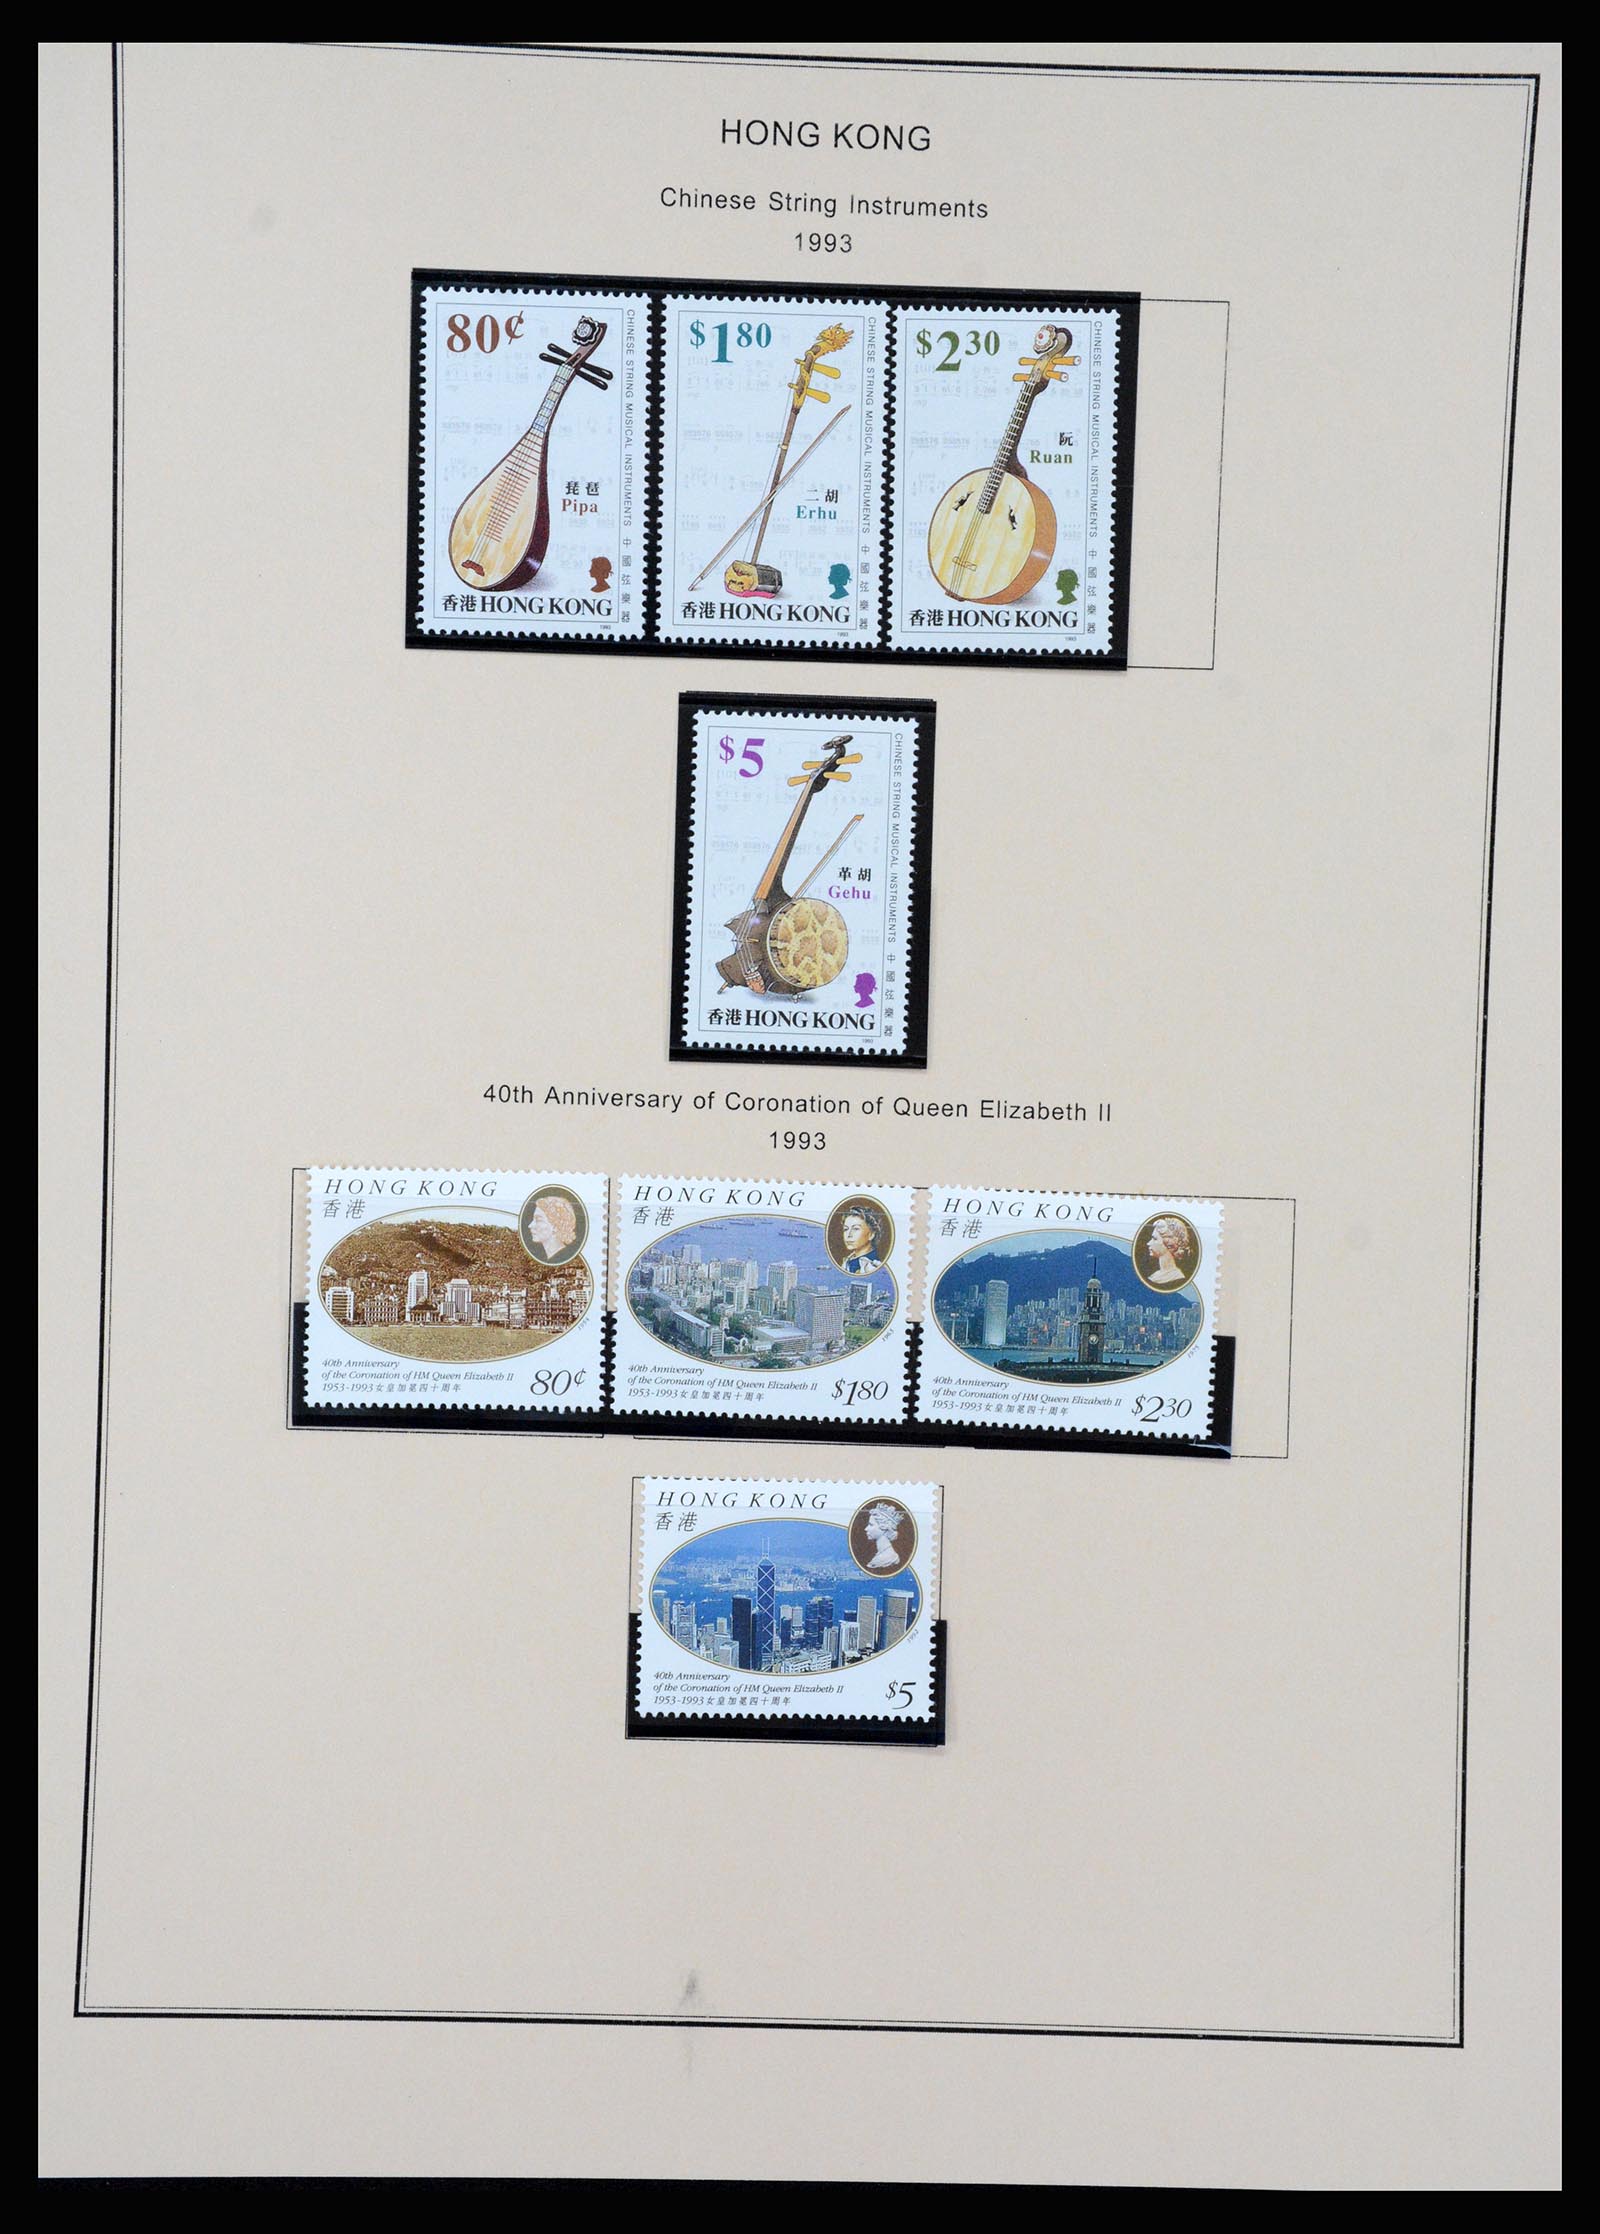 37210 082 - Stamp collection 37210 Hong Kong 1862-2000.